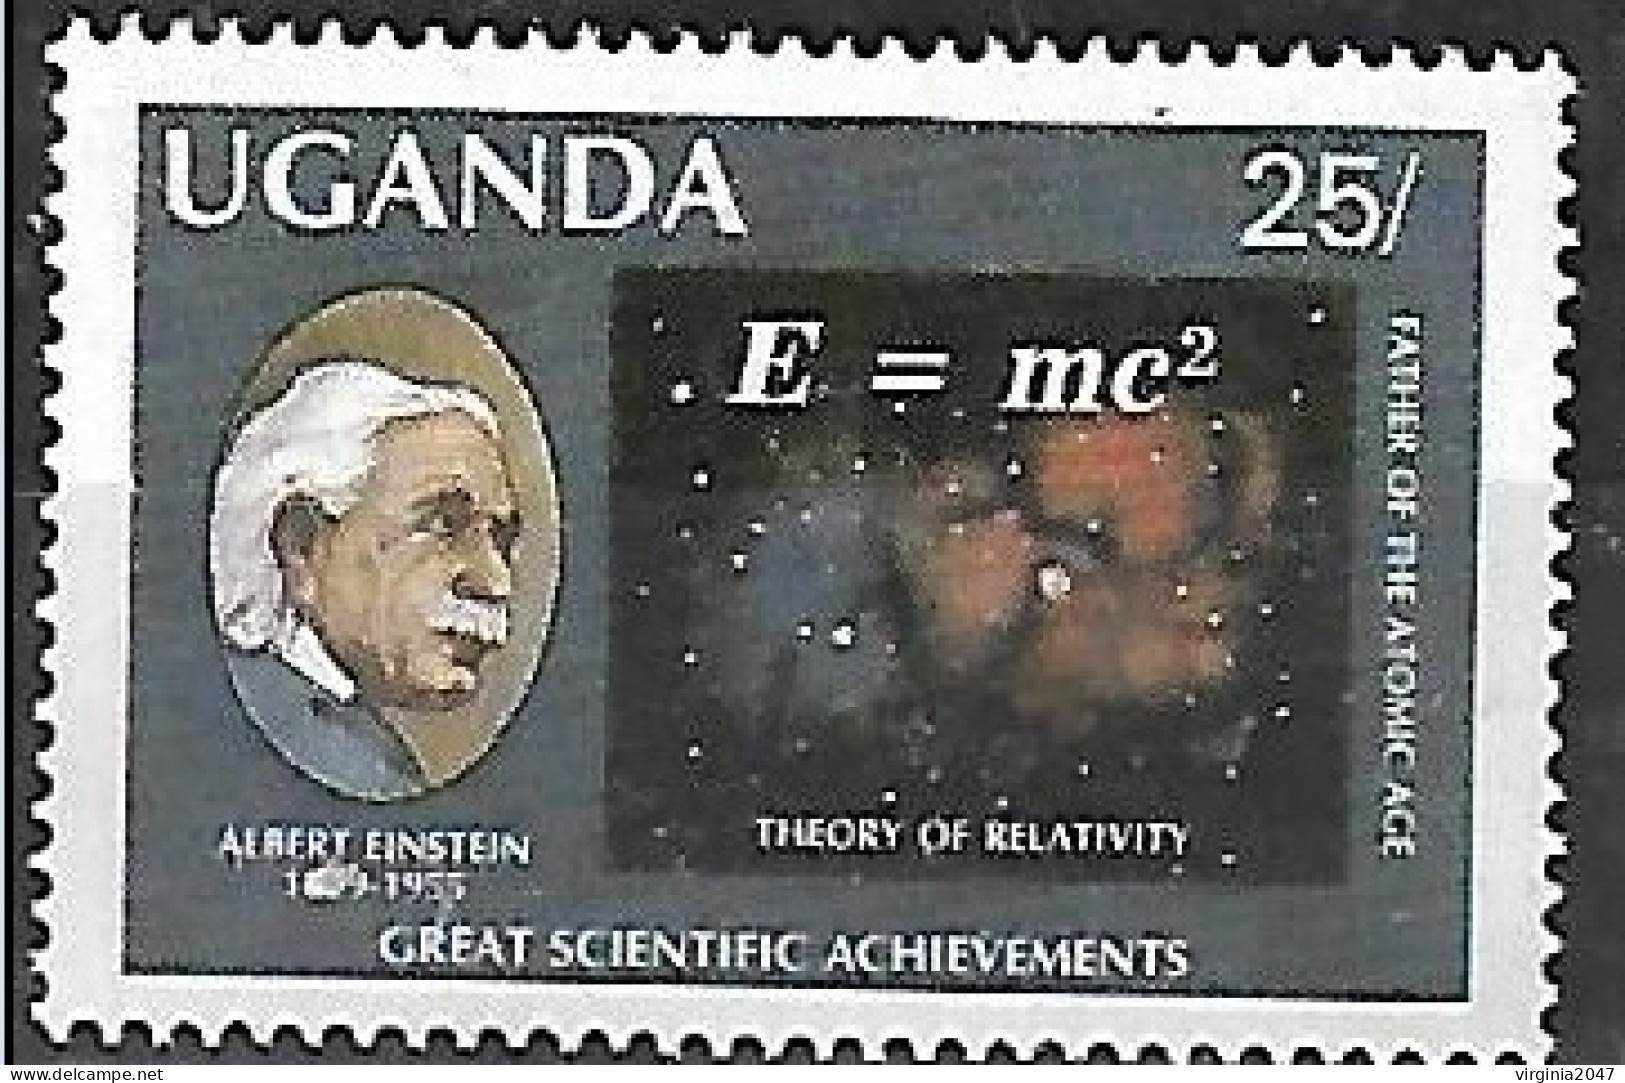 1987 Uganda Personajes Einstein 1v. - Albert Einstein